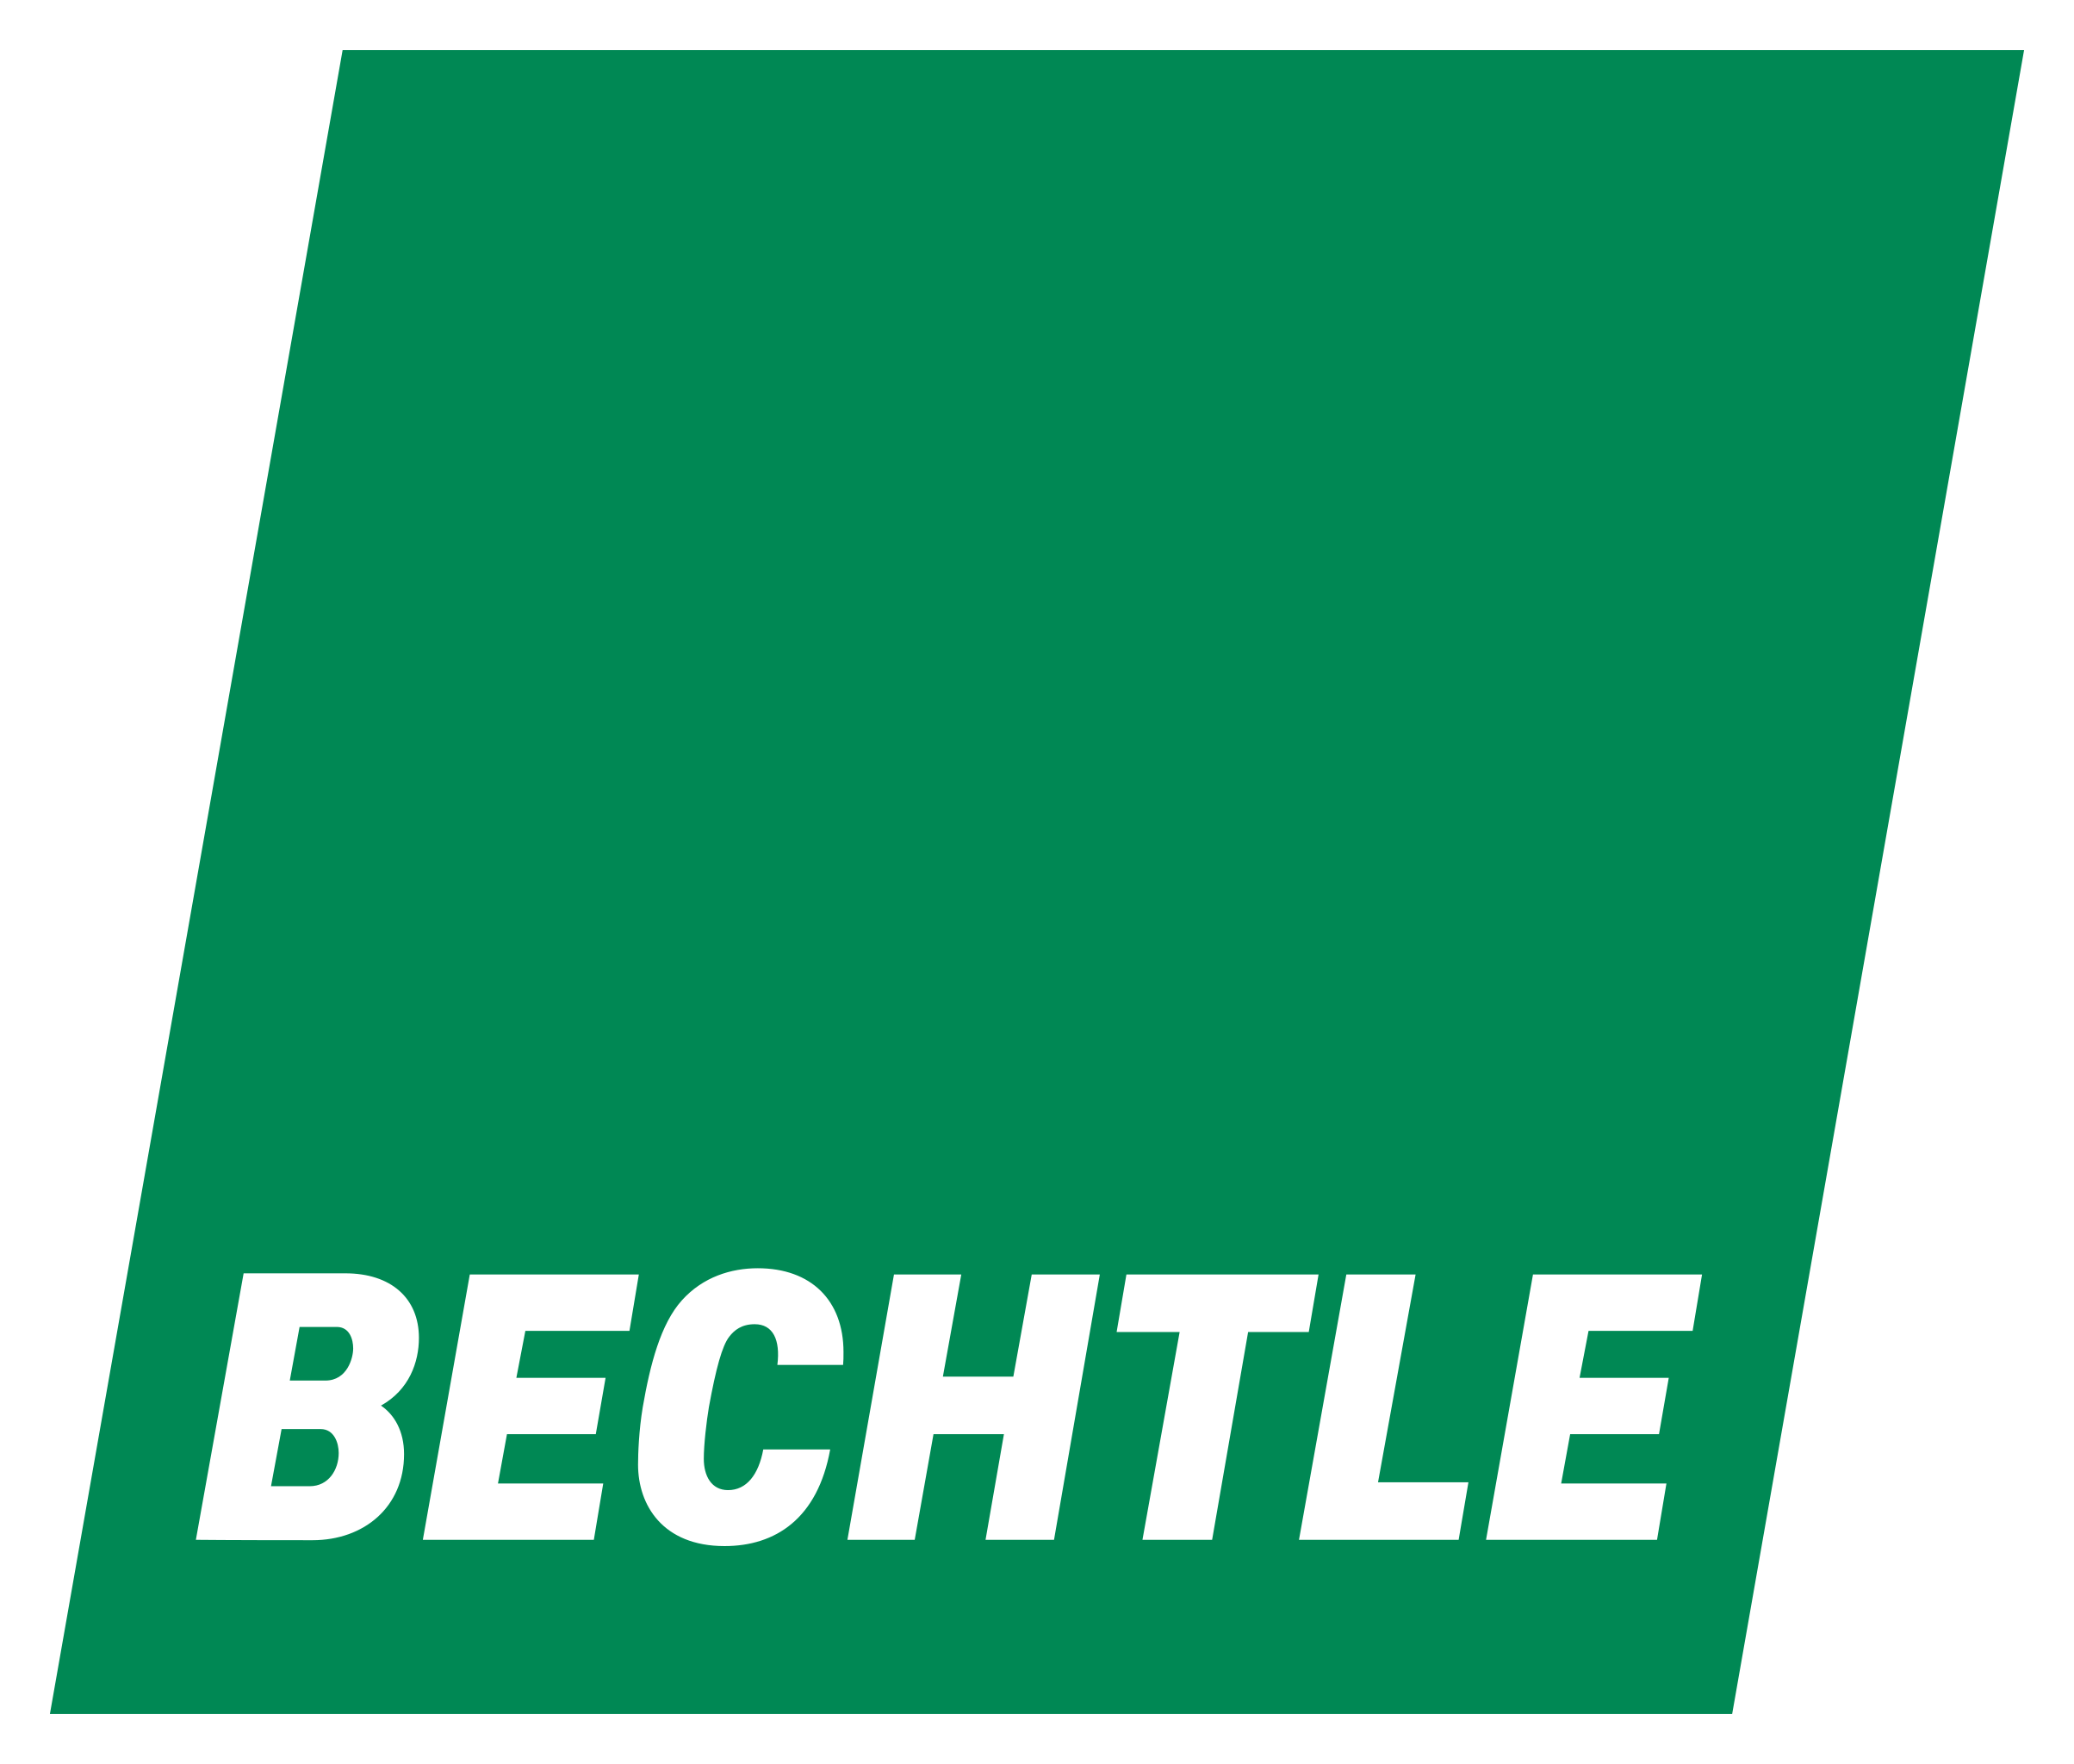 Bechtle PLM Deutschland GmbH